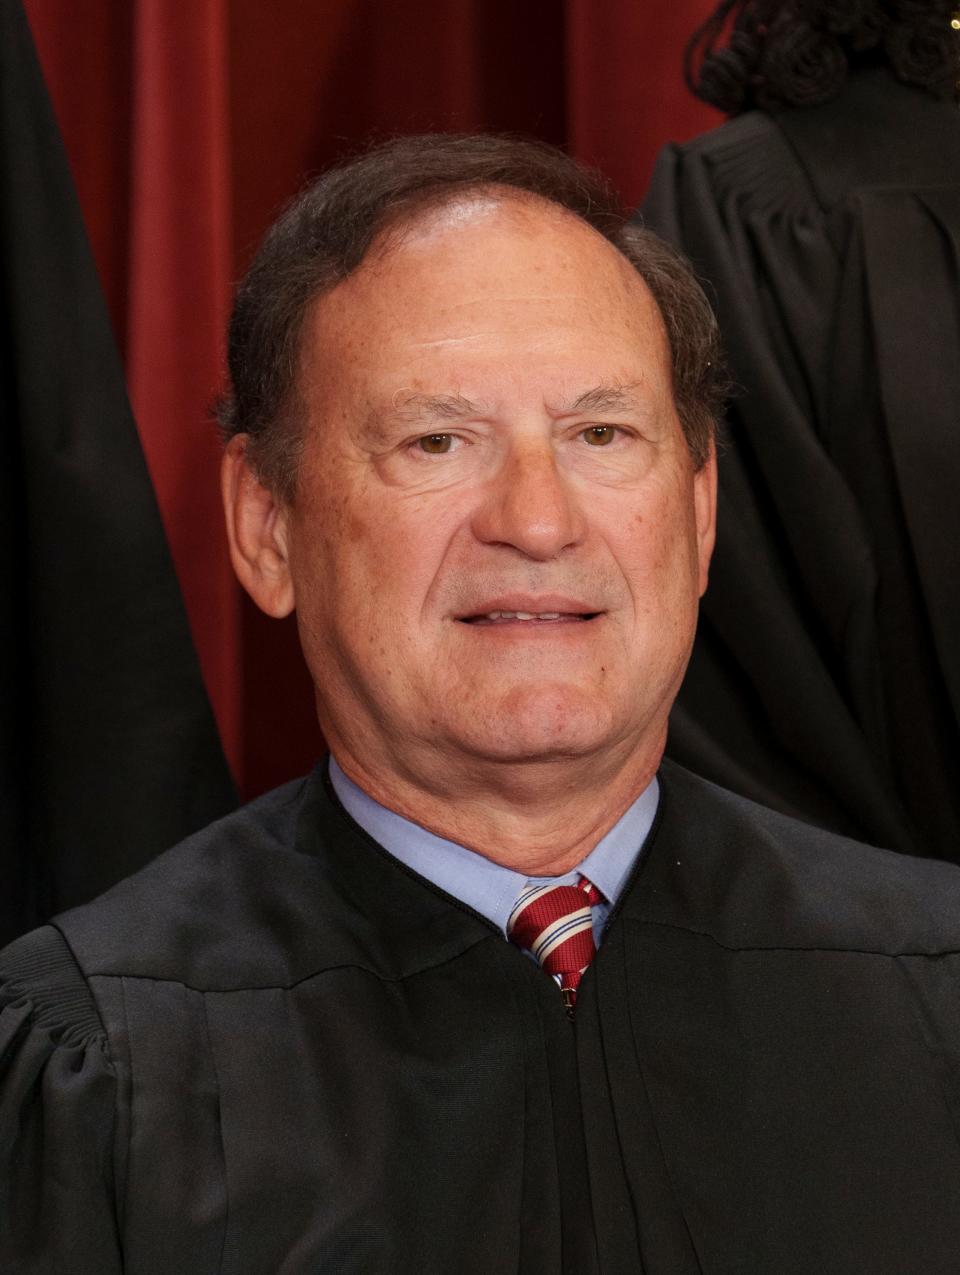 Samuel A. Alito, Supreme Court Justice.